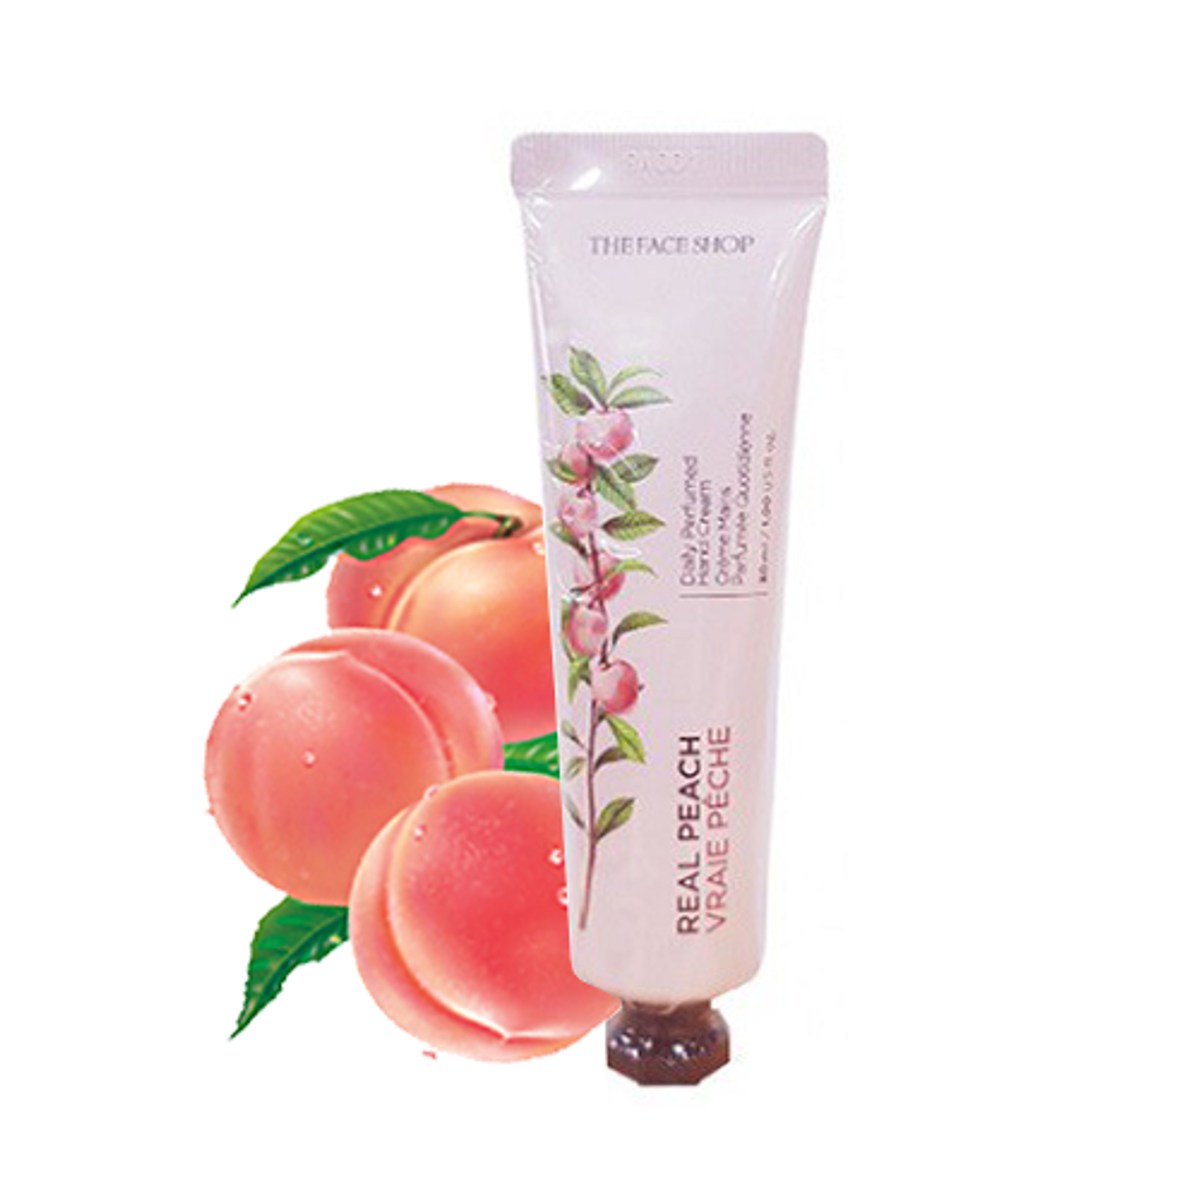 kem-duong-tay-cung-cap-am-daily-perfumed-hand-cream-07-real-peach-30ml-3-2